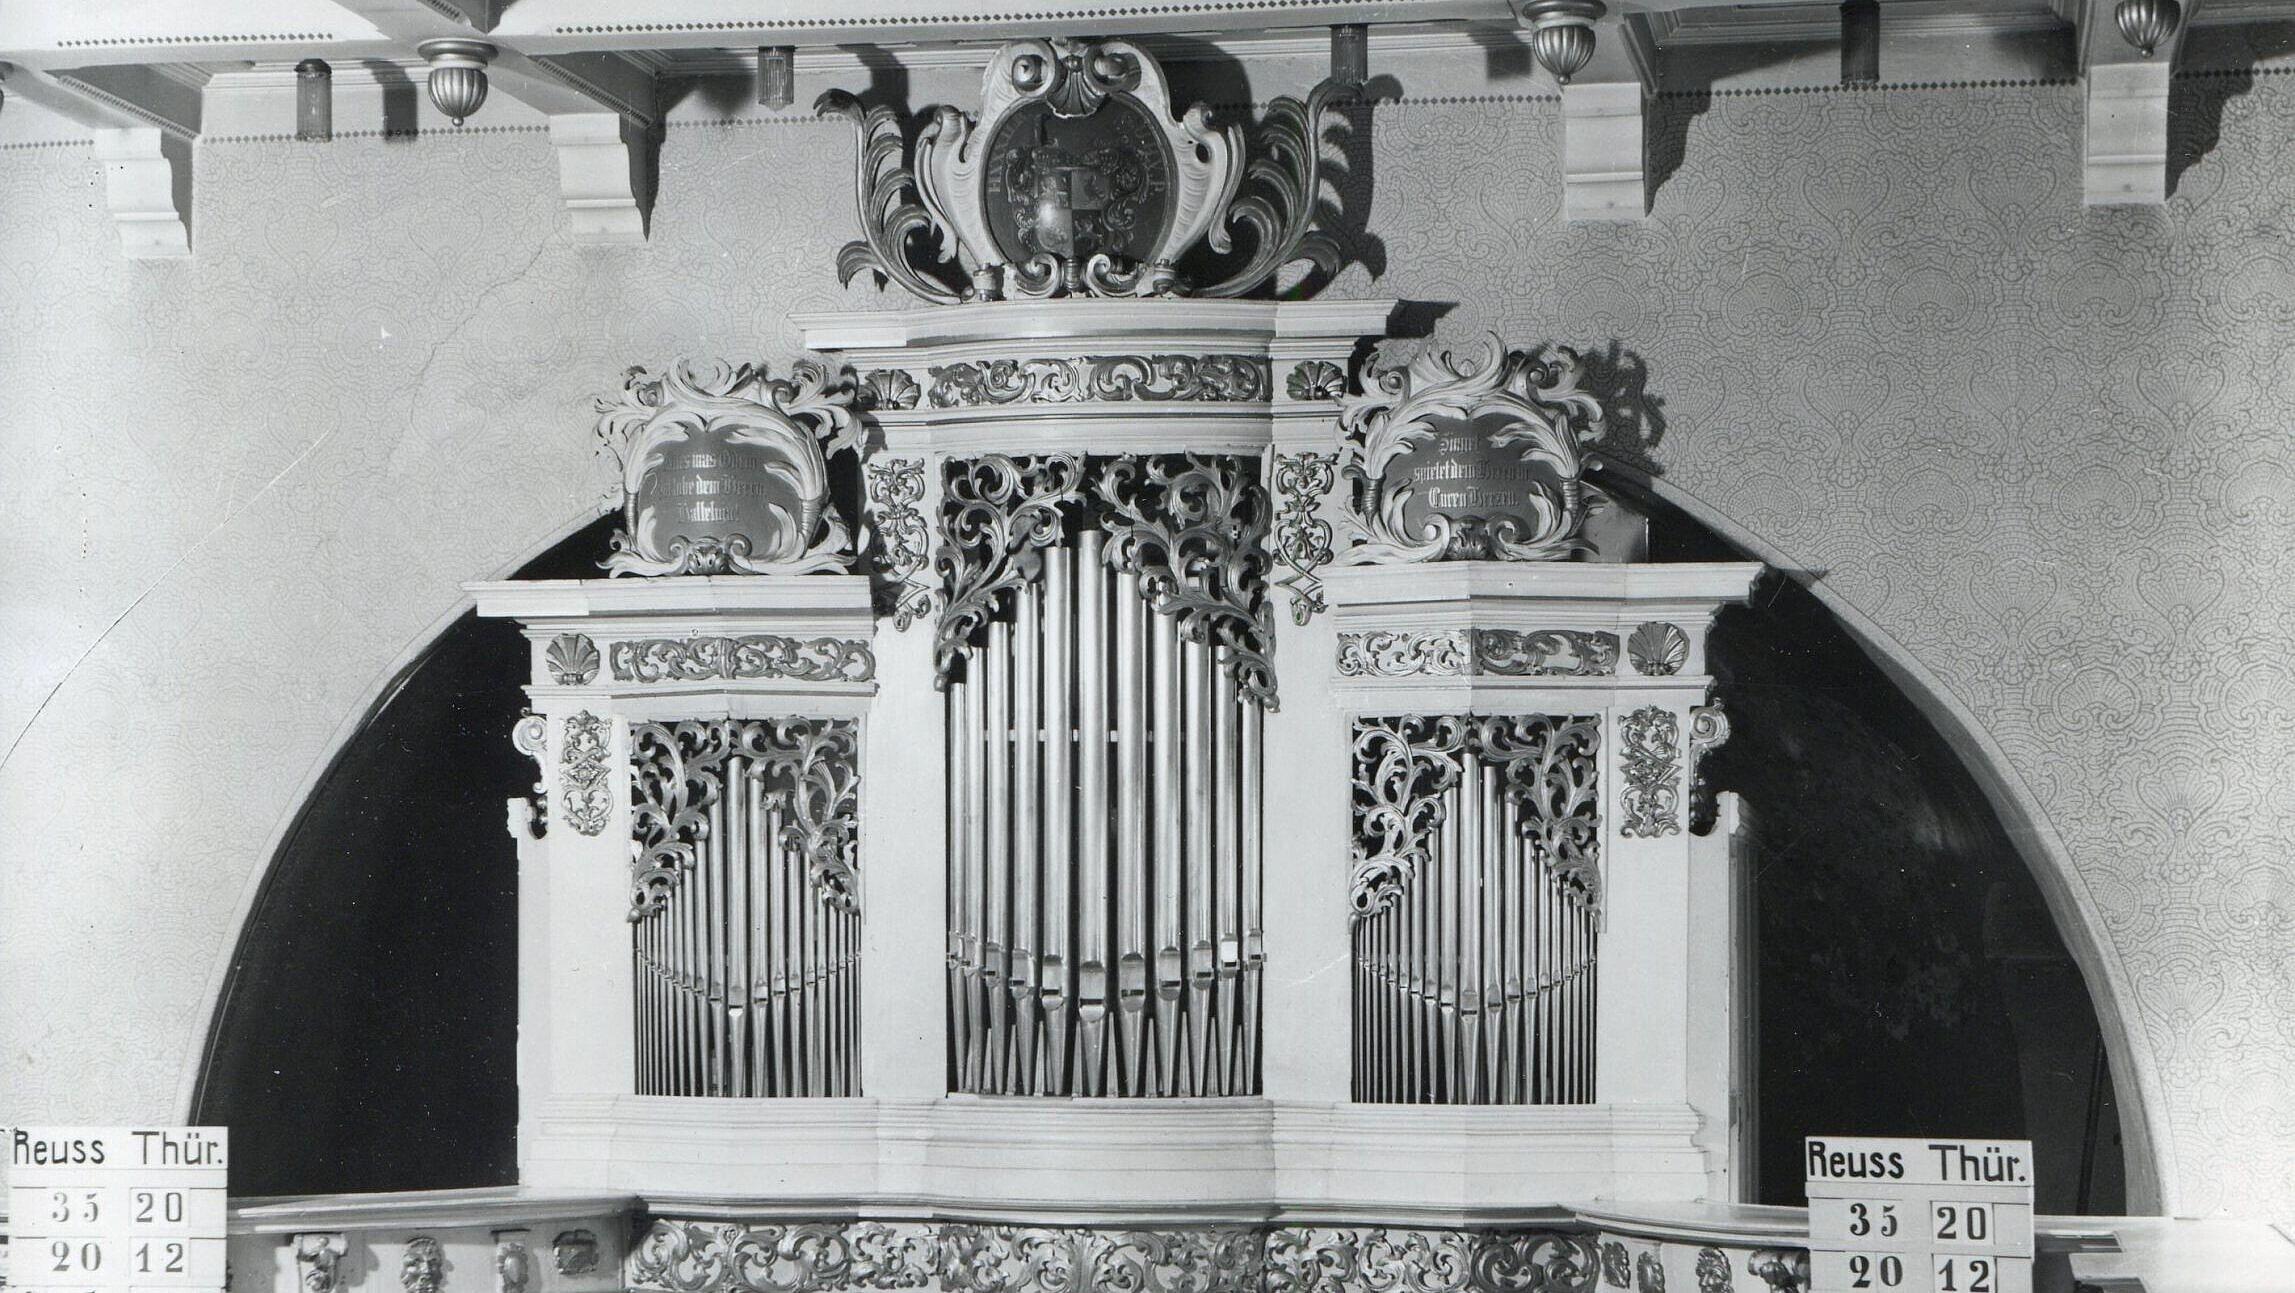 Friederici-Orgel in der Schlosskirche Osterstein um 1930. Die 1738 erbaute Orgel war eine der ersten Arbeiten von Christian Ernst Friederici in Gera. Das Instrument wurde bei der Bombardierung des Schlosses im April 1945 zerstört